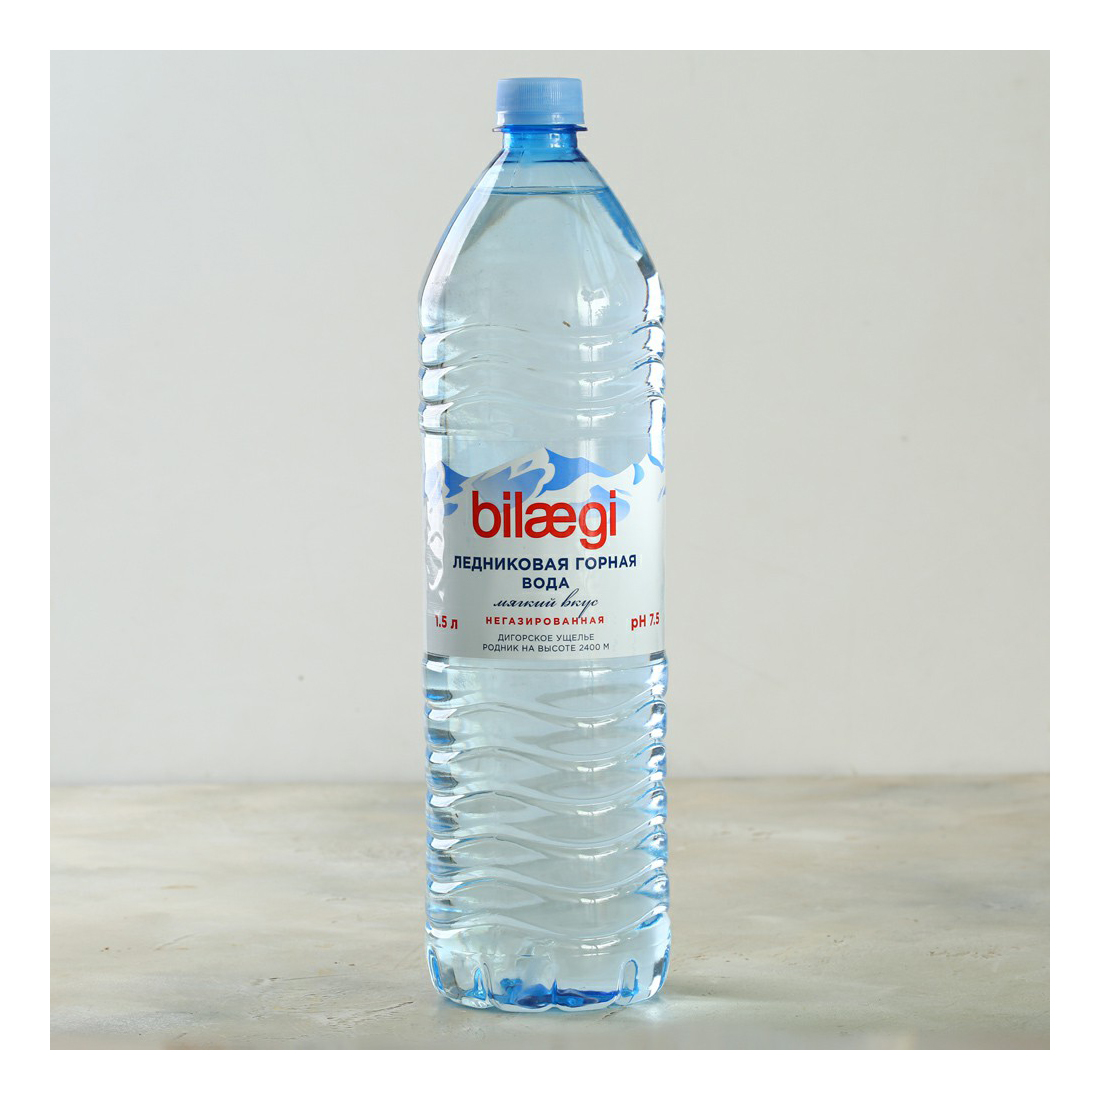 Вода питьевая ледниковая Bilaegi 1,5 л